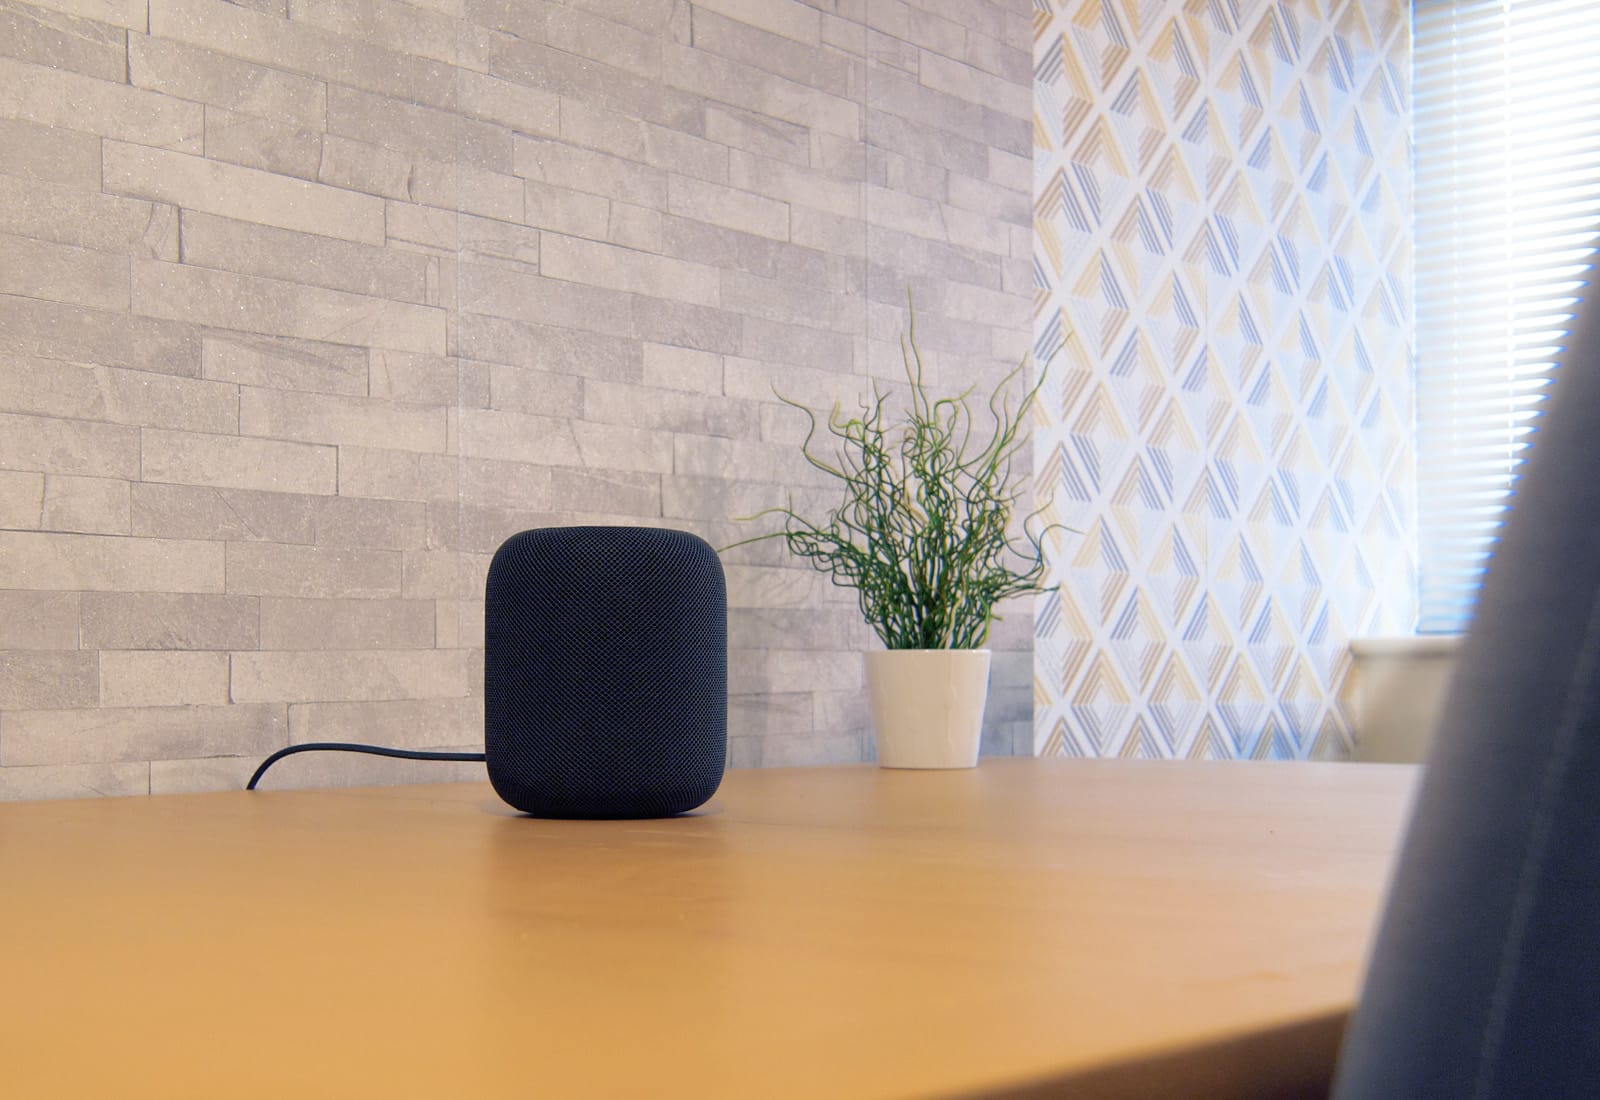 HomePod Siri Speaker